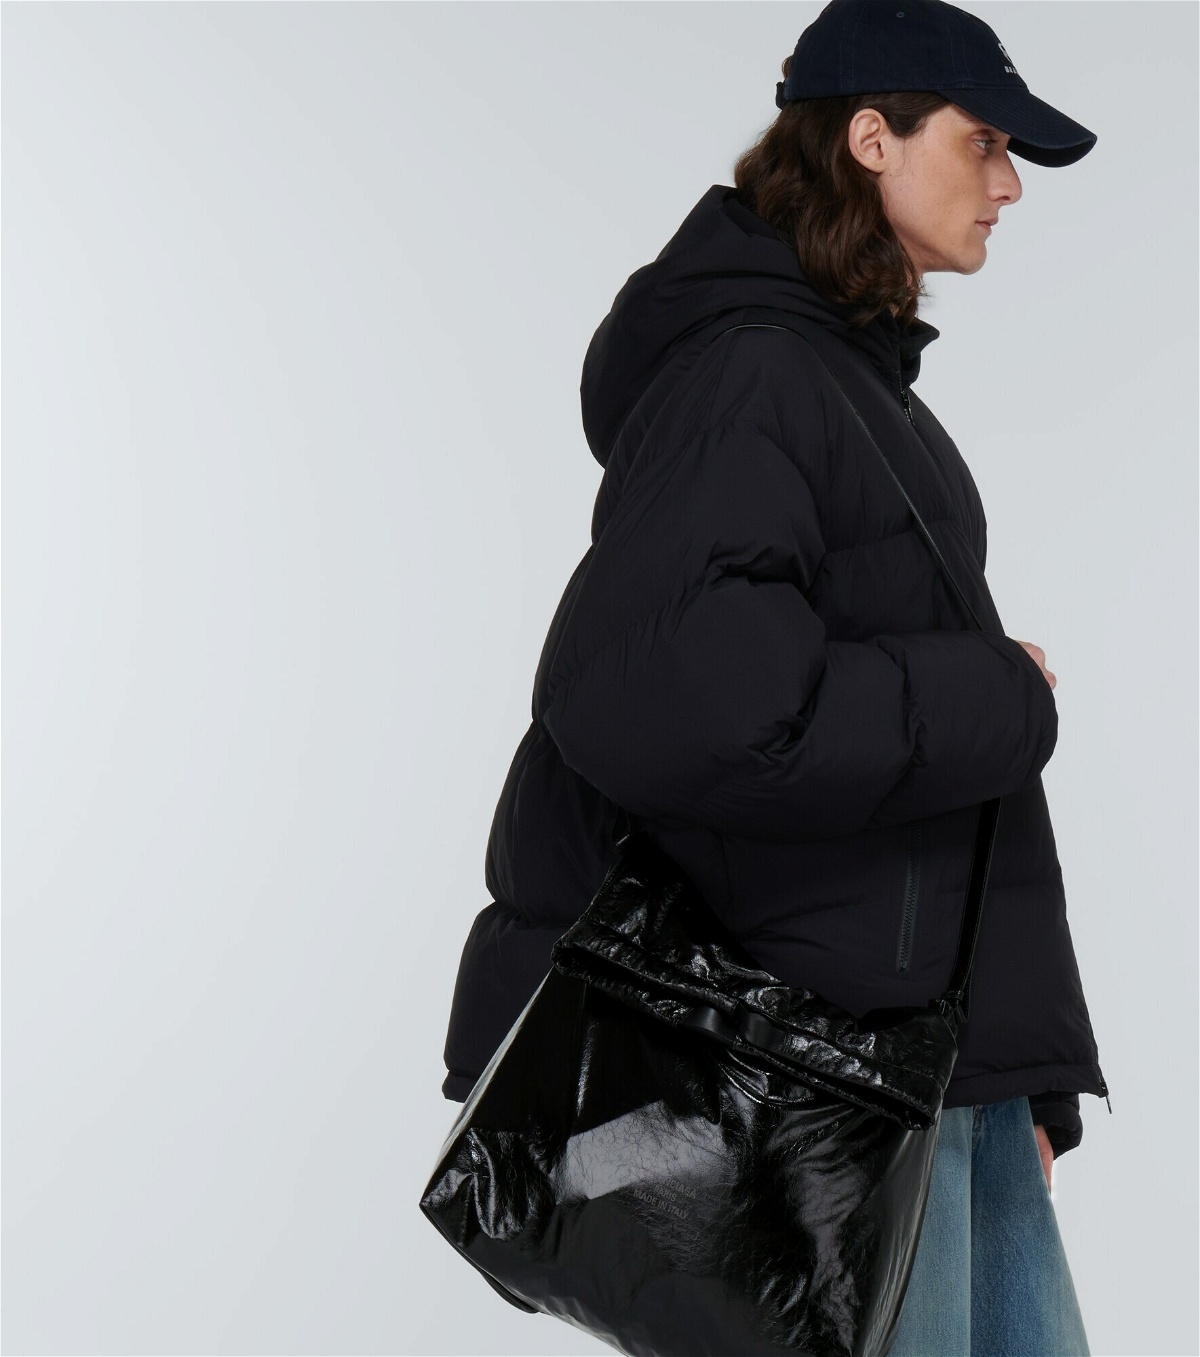 Balenciaga - Trash Bag leather tote bag Balenciaga